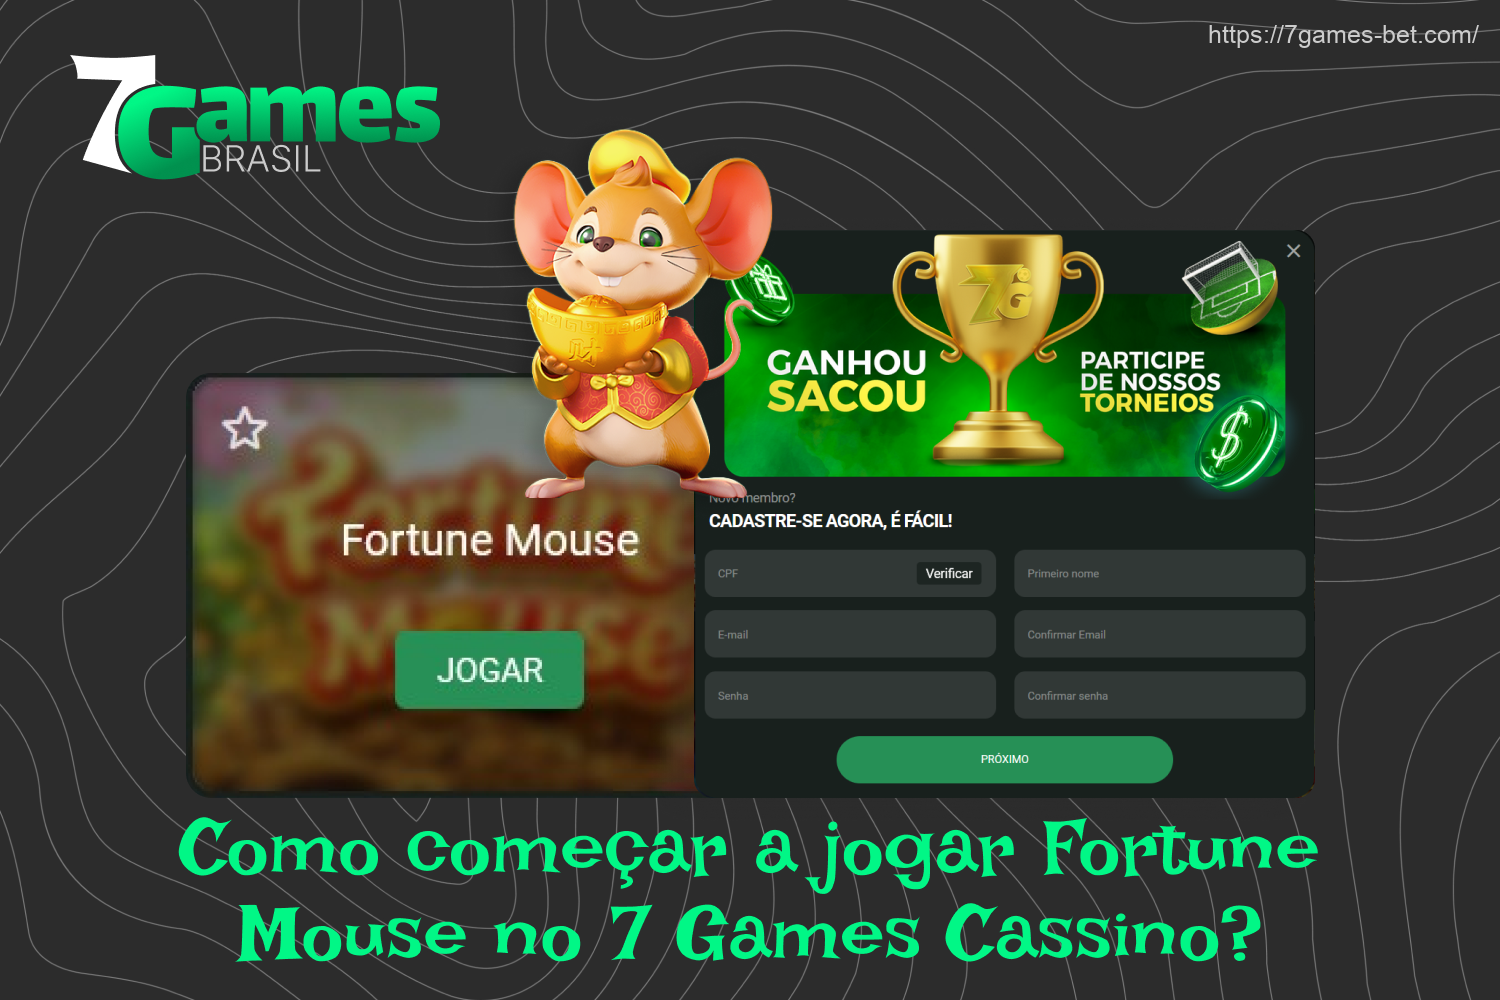 Os brasileiros podem começar a jogar Fortune Mouse no 7Games depois de se registrar e fazer um depósito